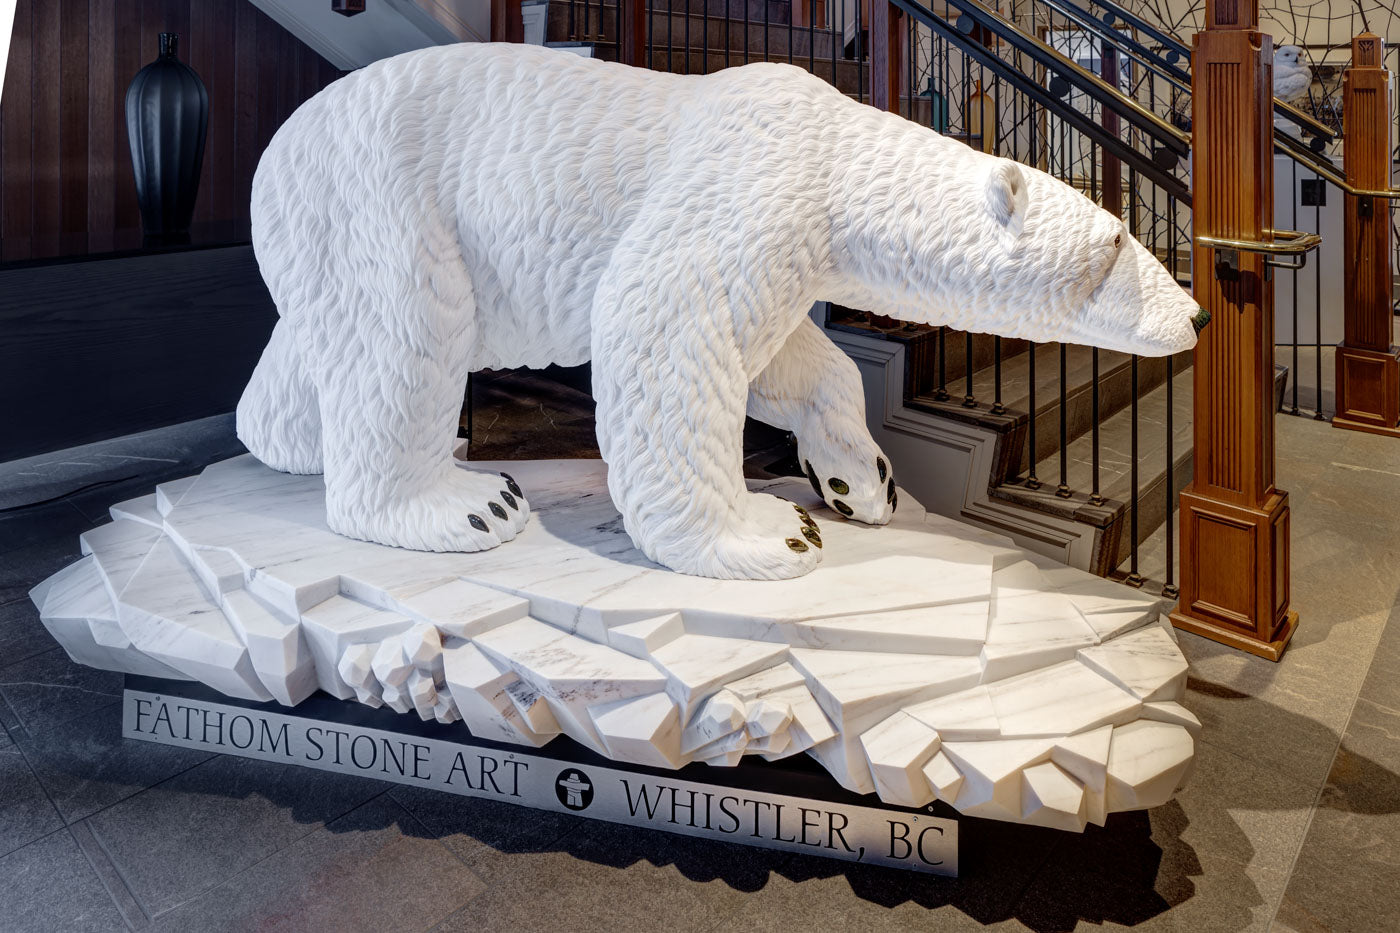 Arctic Pursuit - 7' Life Size Polar Bear